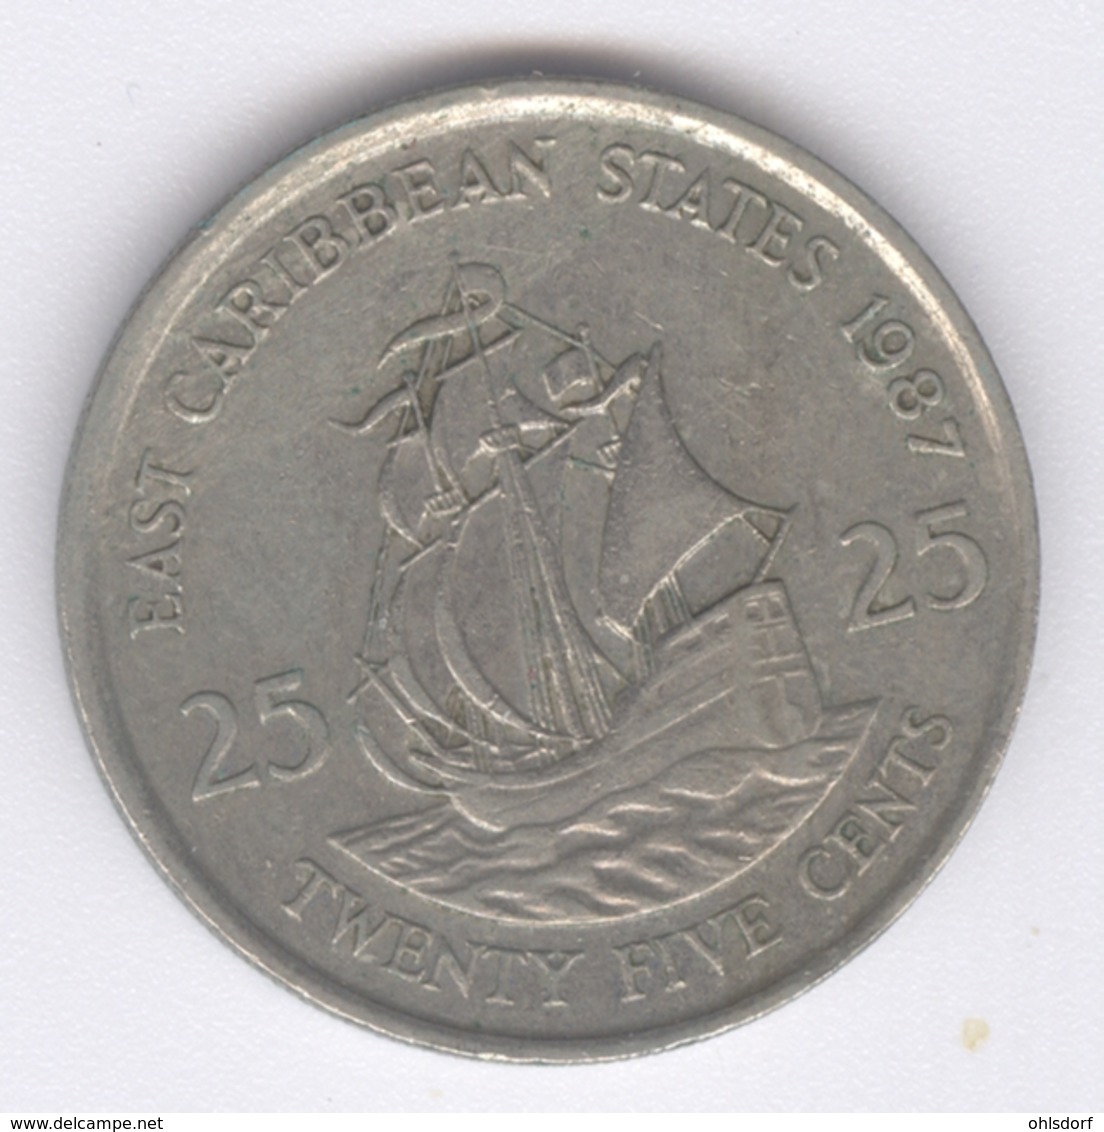 EAST CARIBBEAN STATES 1987: 25 Cents, KM 14 - Caraïbes Orientales (Etats Des)